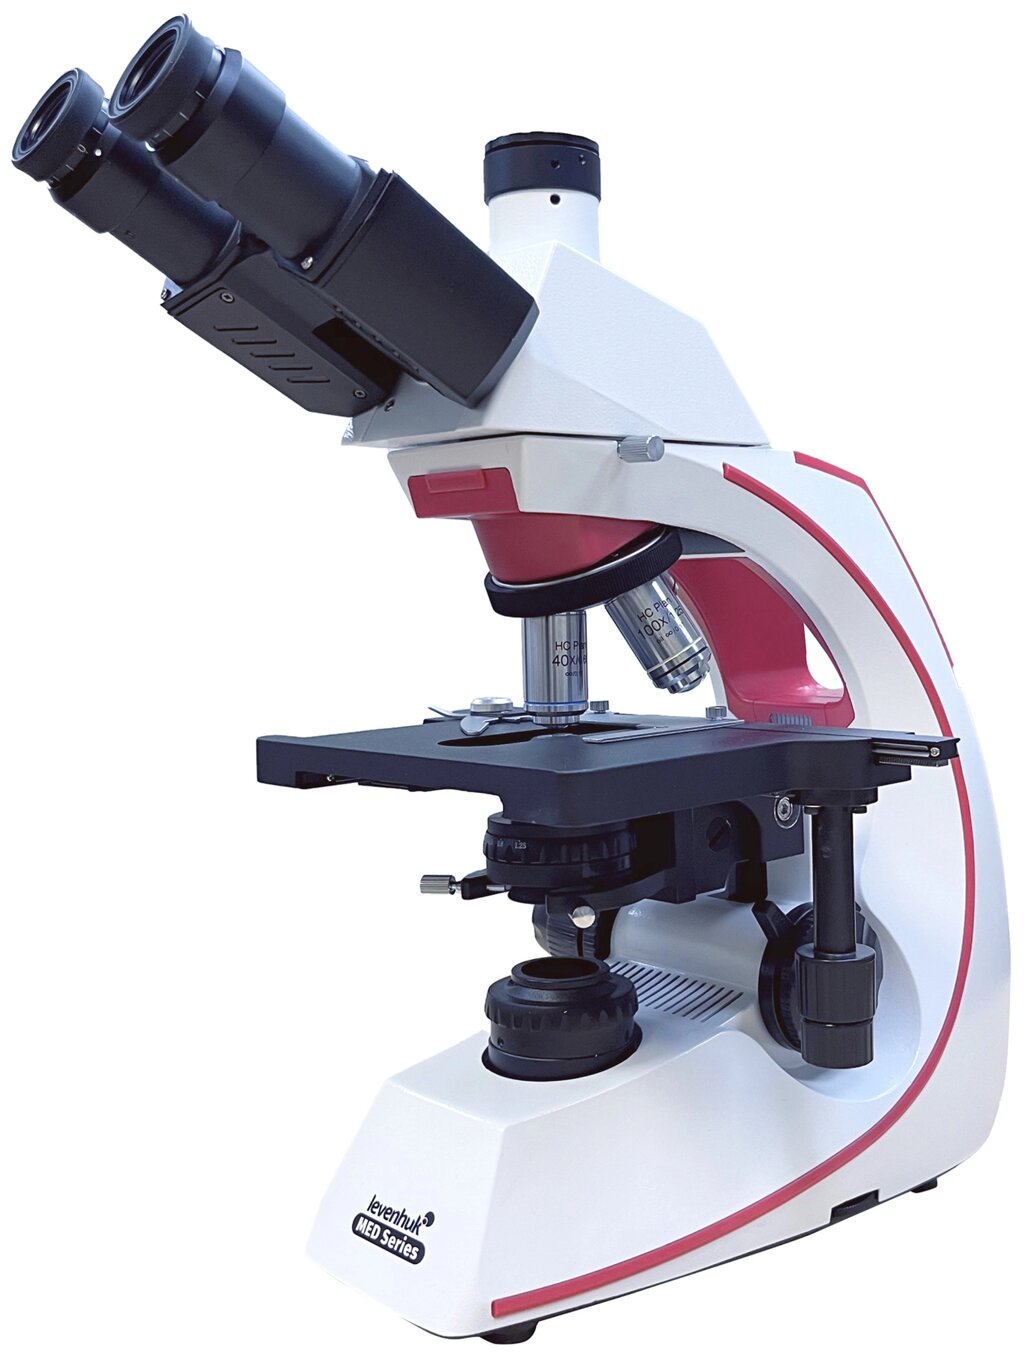 Микроскоп лабораторный Levenhuk MED PHС1600KLED от компании ООО "АССЕРВИС" лабораторное оборудование и весы по низким ценам. - фото 1